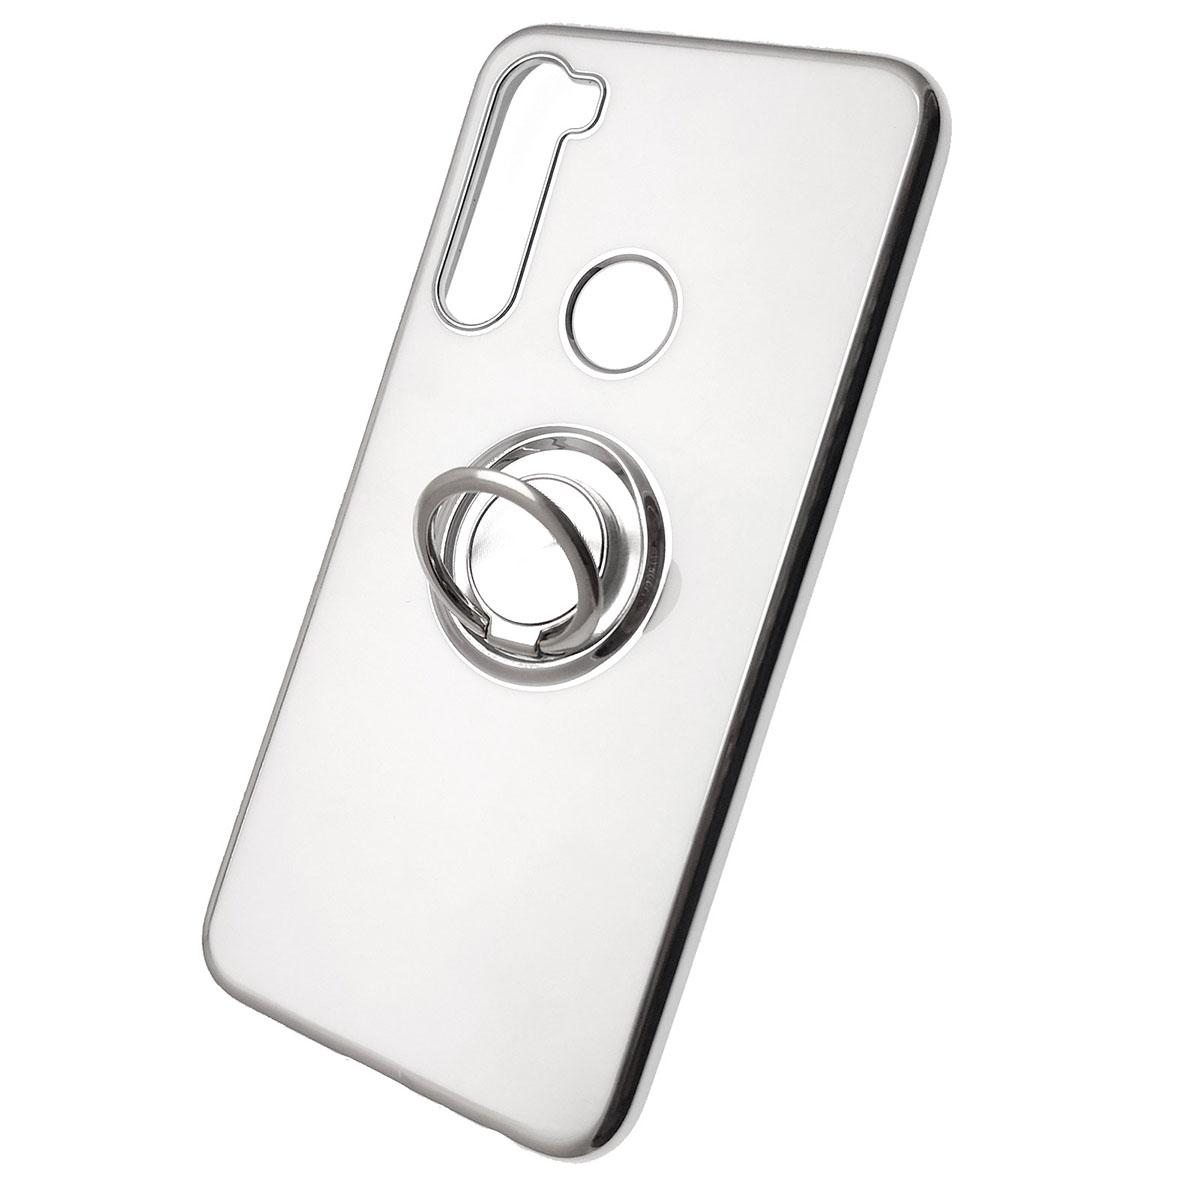 Чехол накладка для XIAOMI Redmi Note 8, силикон, кольцо держатель, цвет белый.